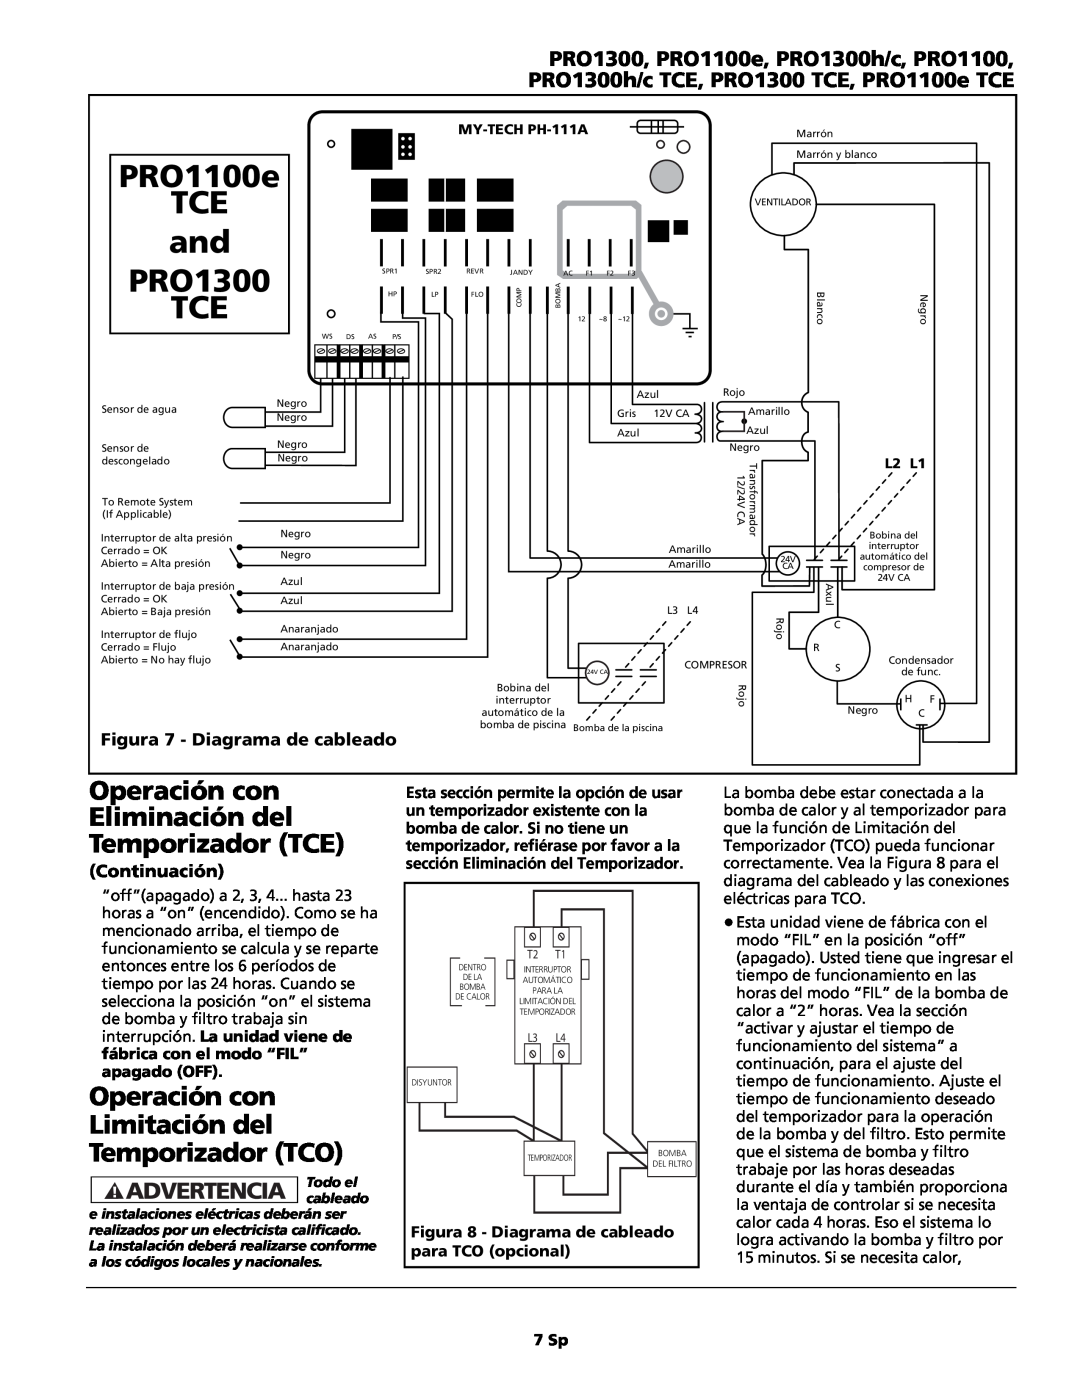 AquaPRO PRO1300h/c Operación con Limitación del Temporizador TCO, Figura 7 - Diagrama de cableado, PRO1100e, Continuación 